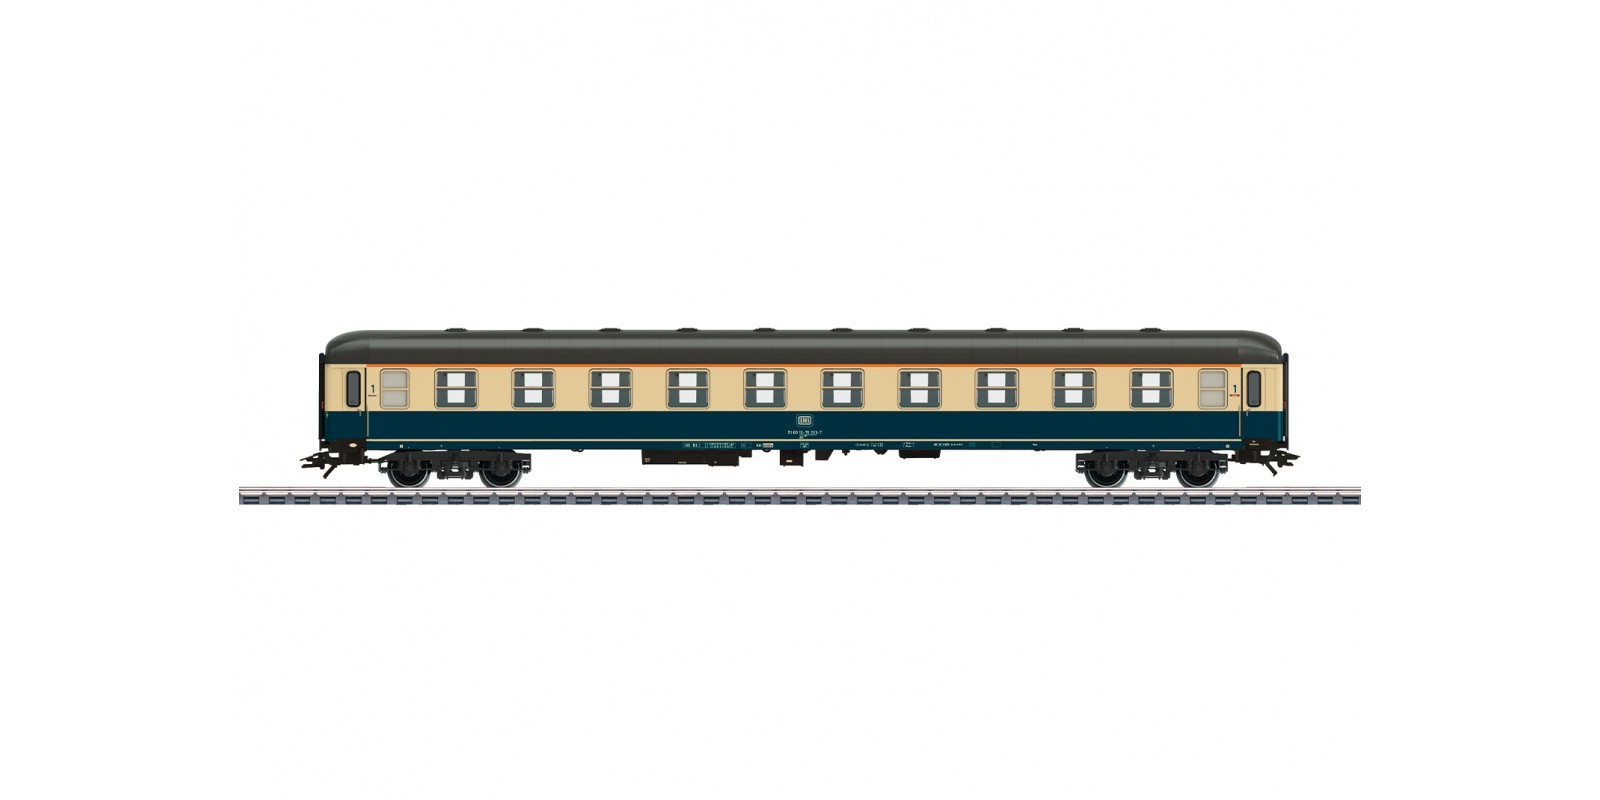 43914 Type Am 203 Express Passenger Car